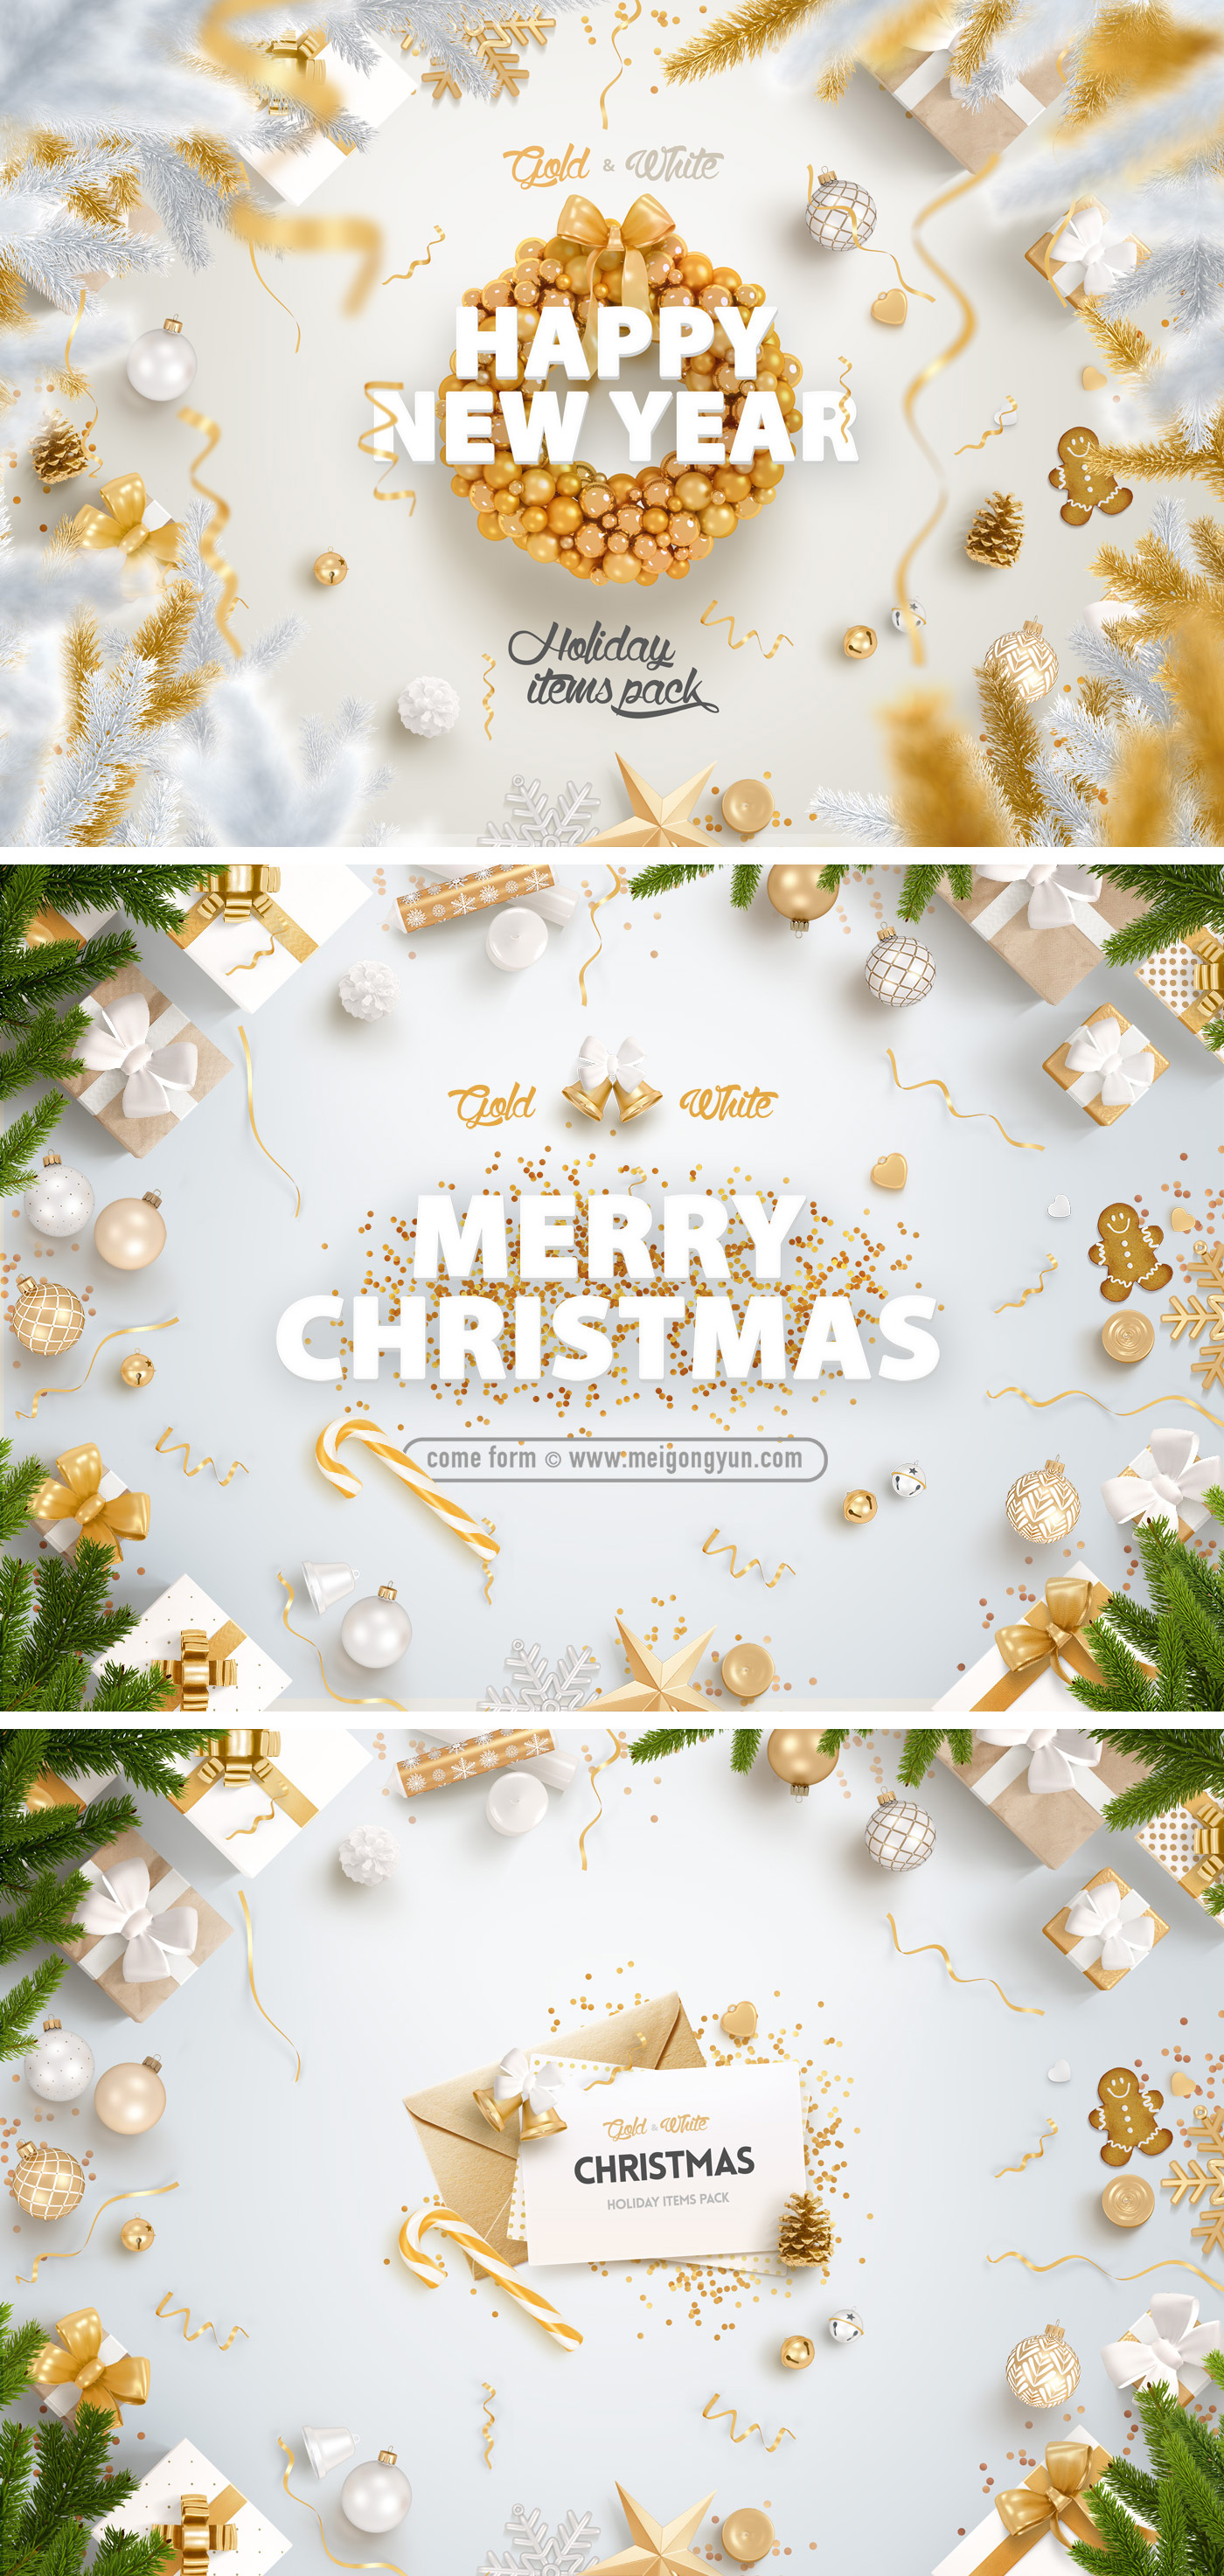 高品质黄金版圣诞节海报 Christmas Poster